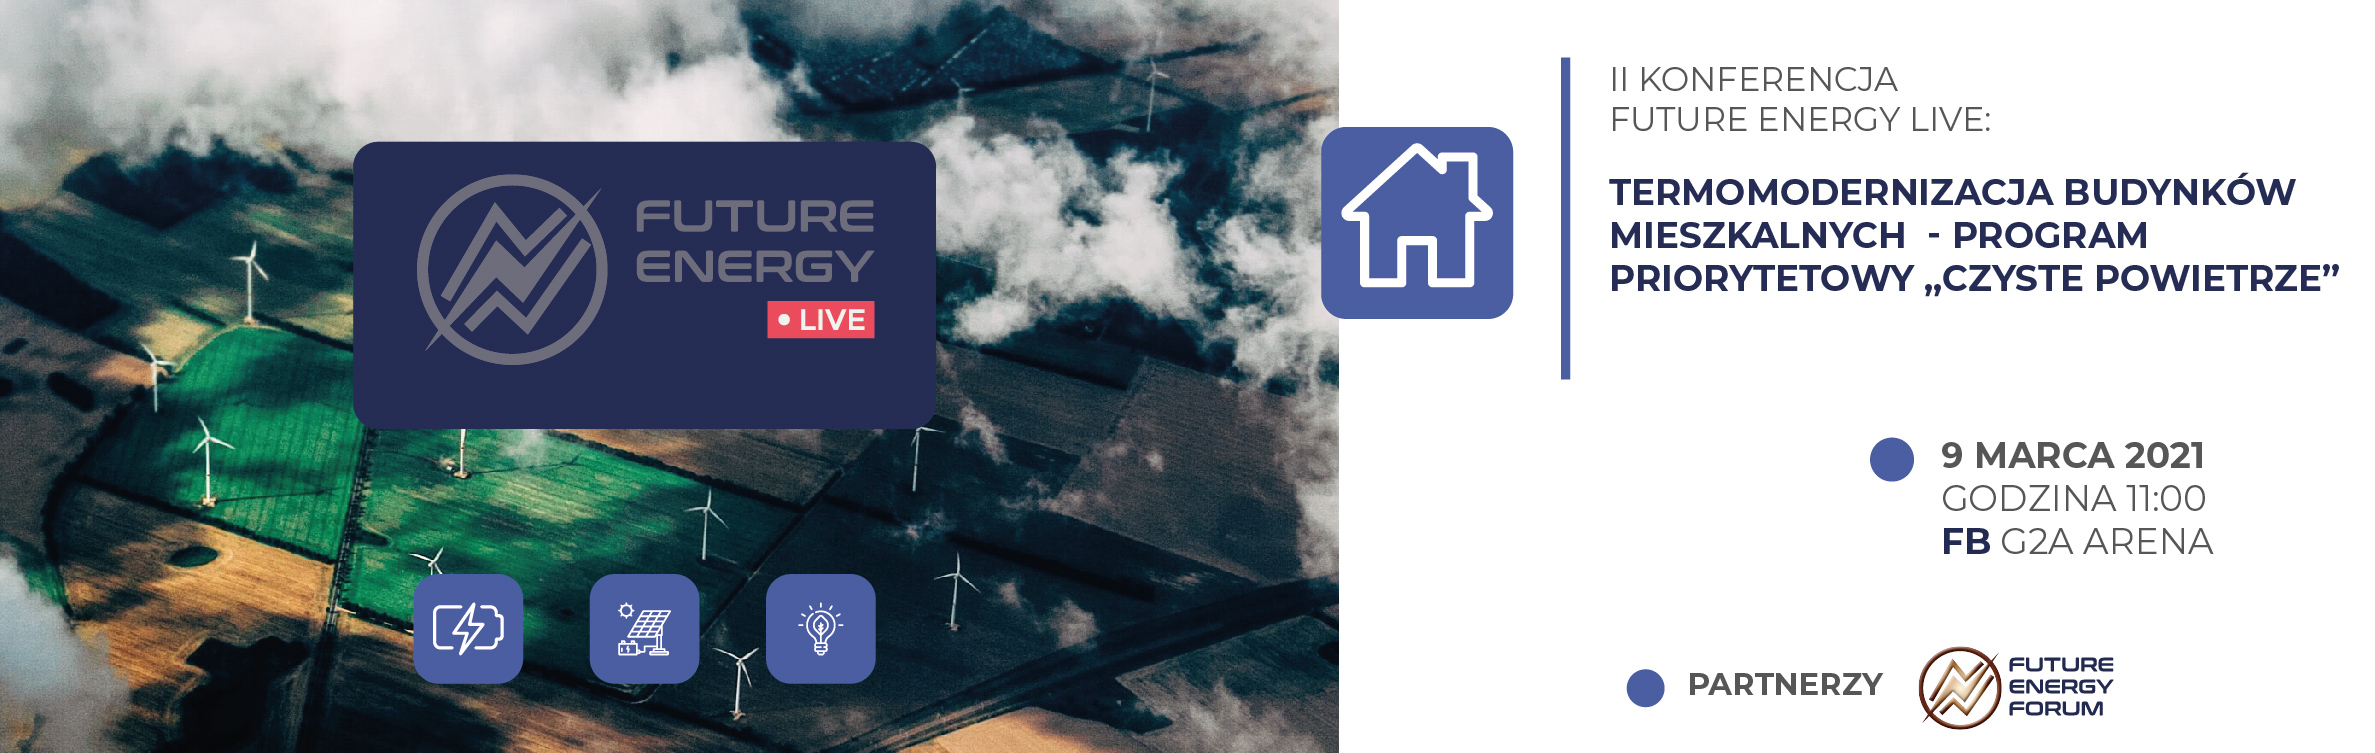 II Konferencja Future Energy Live: Termomodernizacja budynków mieszkalnych − Program priorytetowy “Czyste Powietrze”